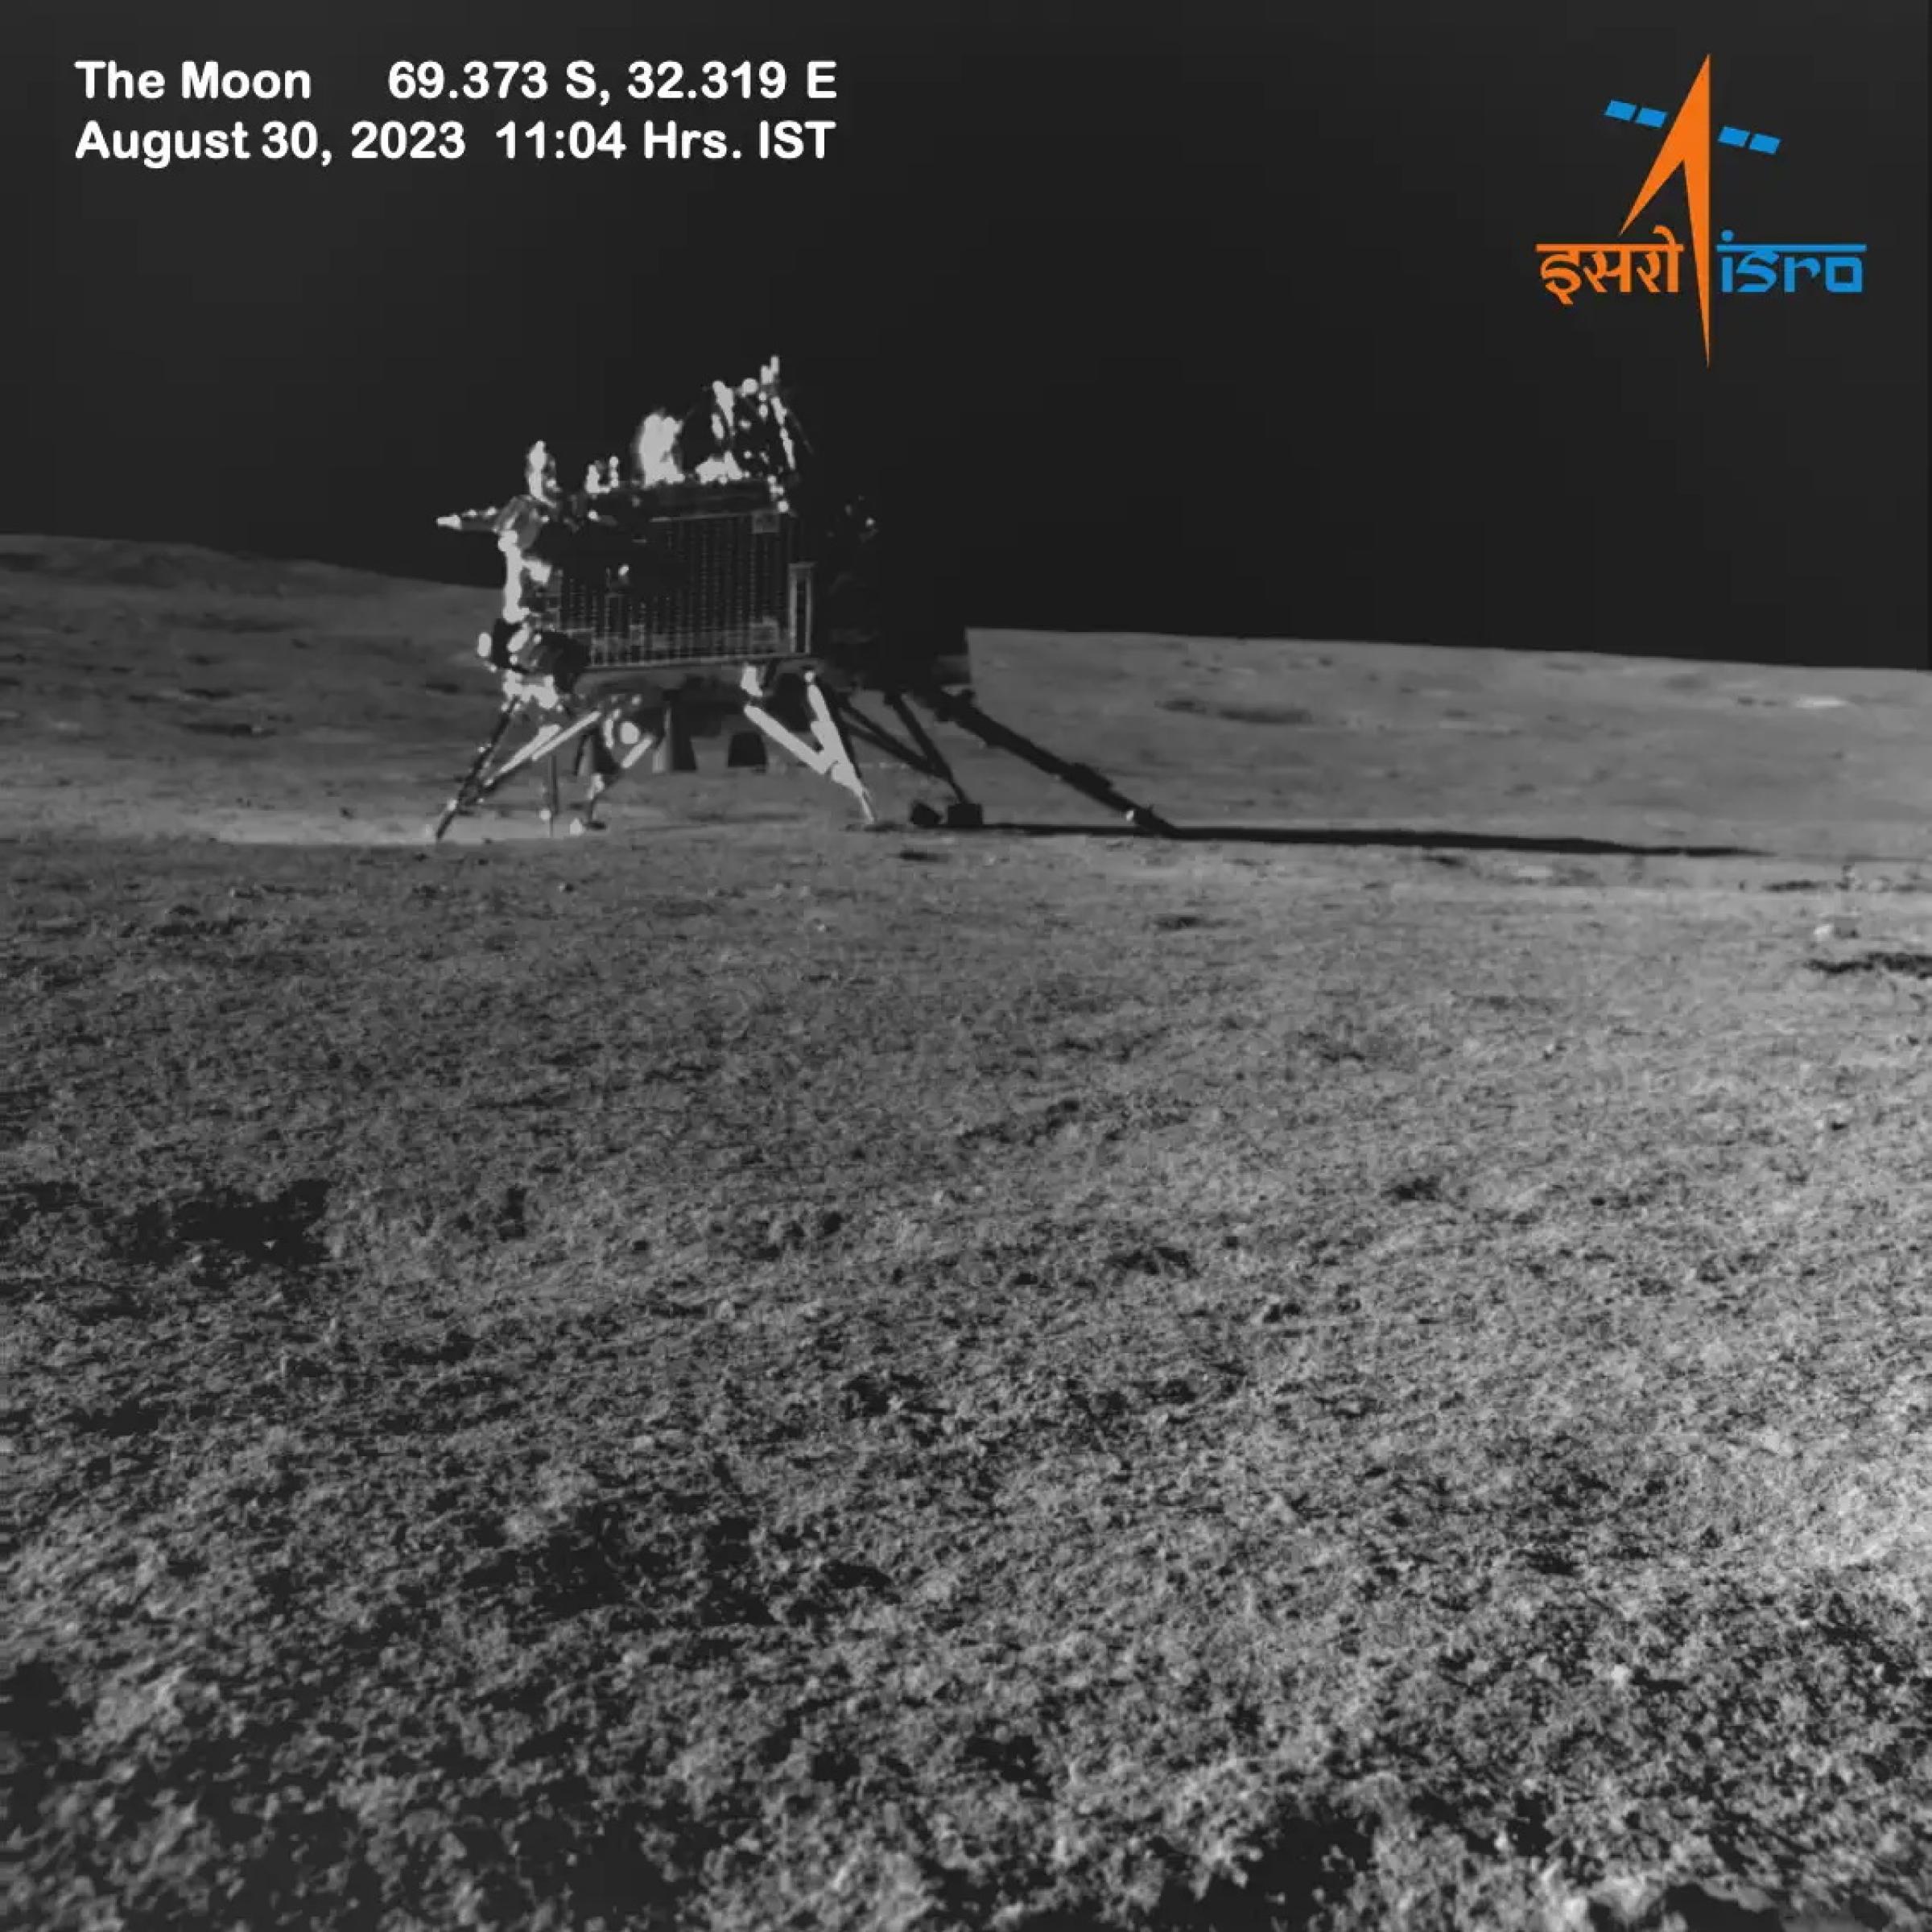 Das Schwarzweißbild zeigt die Landeeinheit der indischen Mondmission Chandrayaan-3 auf der Mondoberfläche, fotografiert von dem mitgeführten Rover.